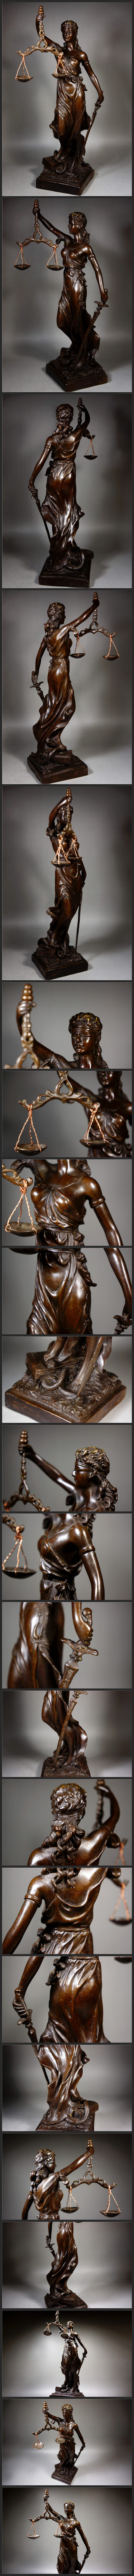 安い買い細工銅製 ギリシア神話 正義の女神 テミス造像高彫 鎮宅開運置物 極上質 高29.5cm 1.45kg 仏像